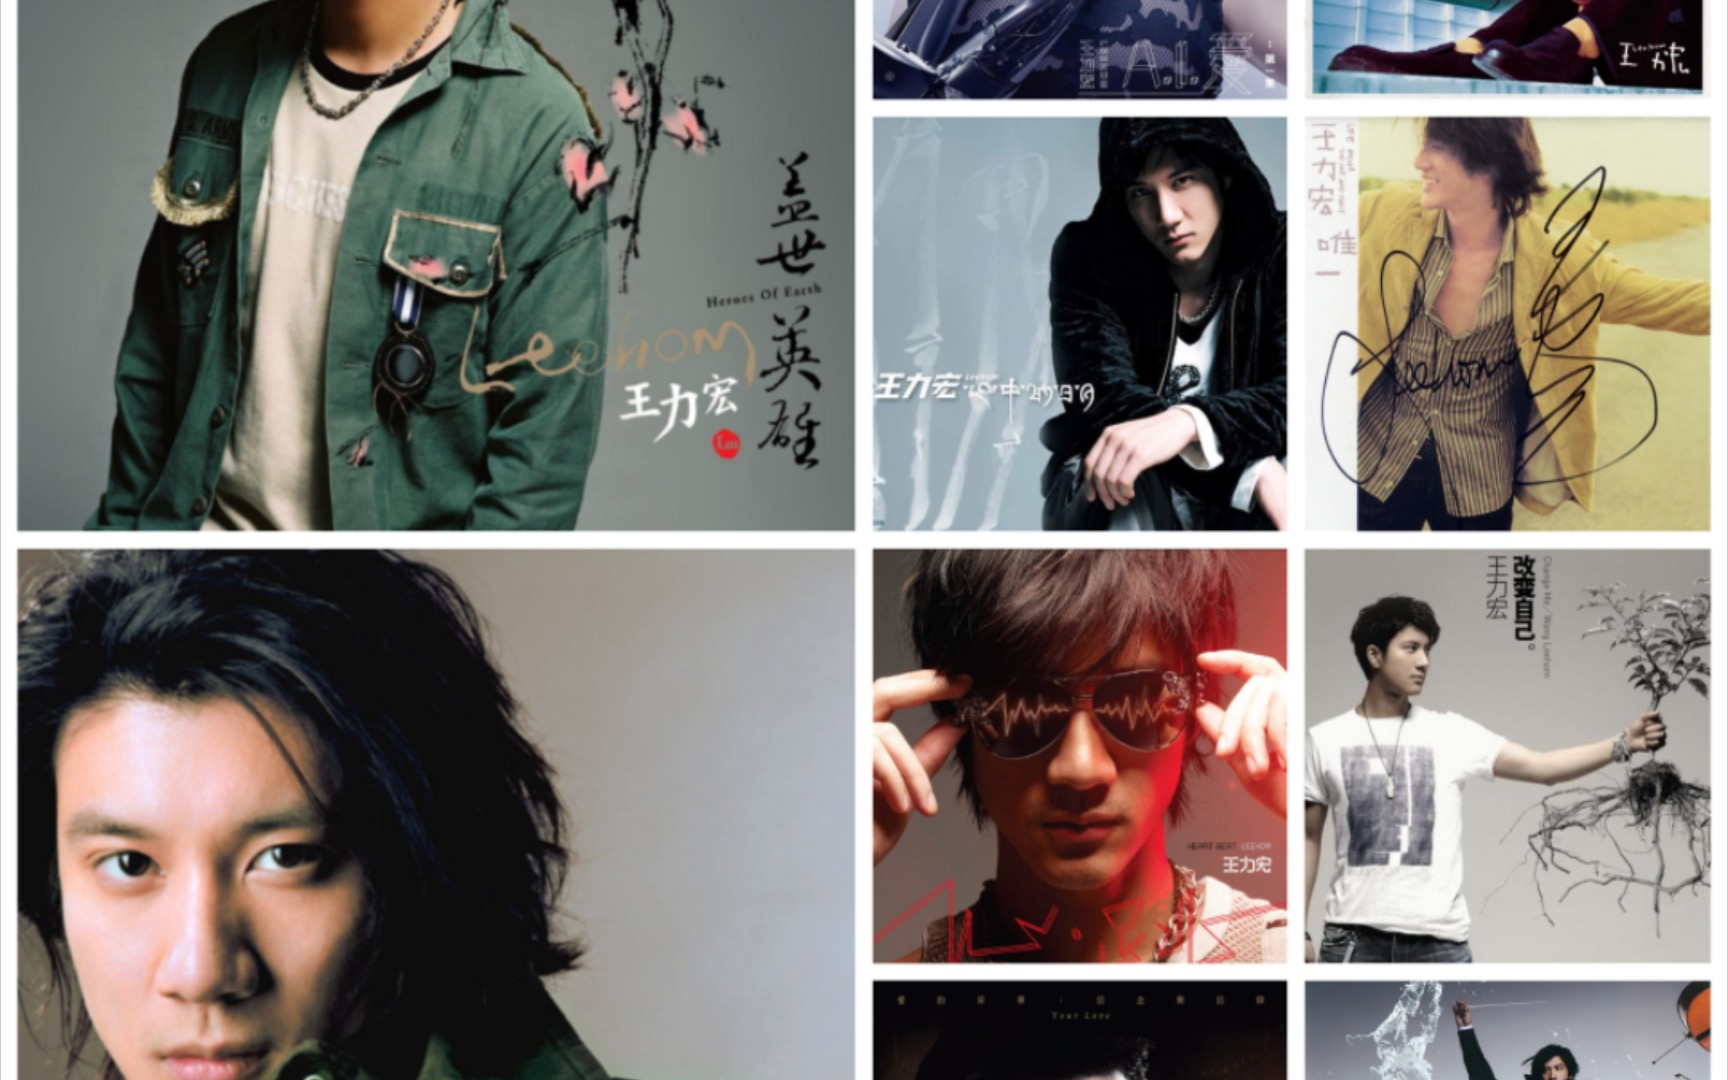 整合22位up的王力宏专辑《公转自转》–《ai爱》排名